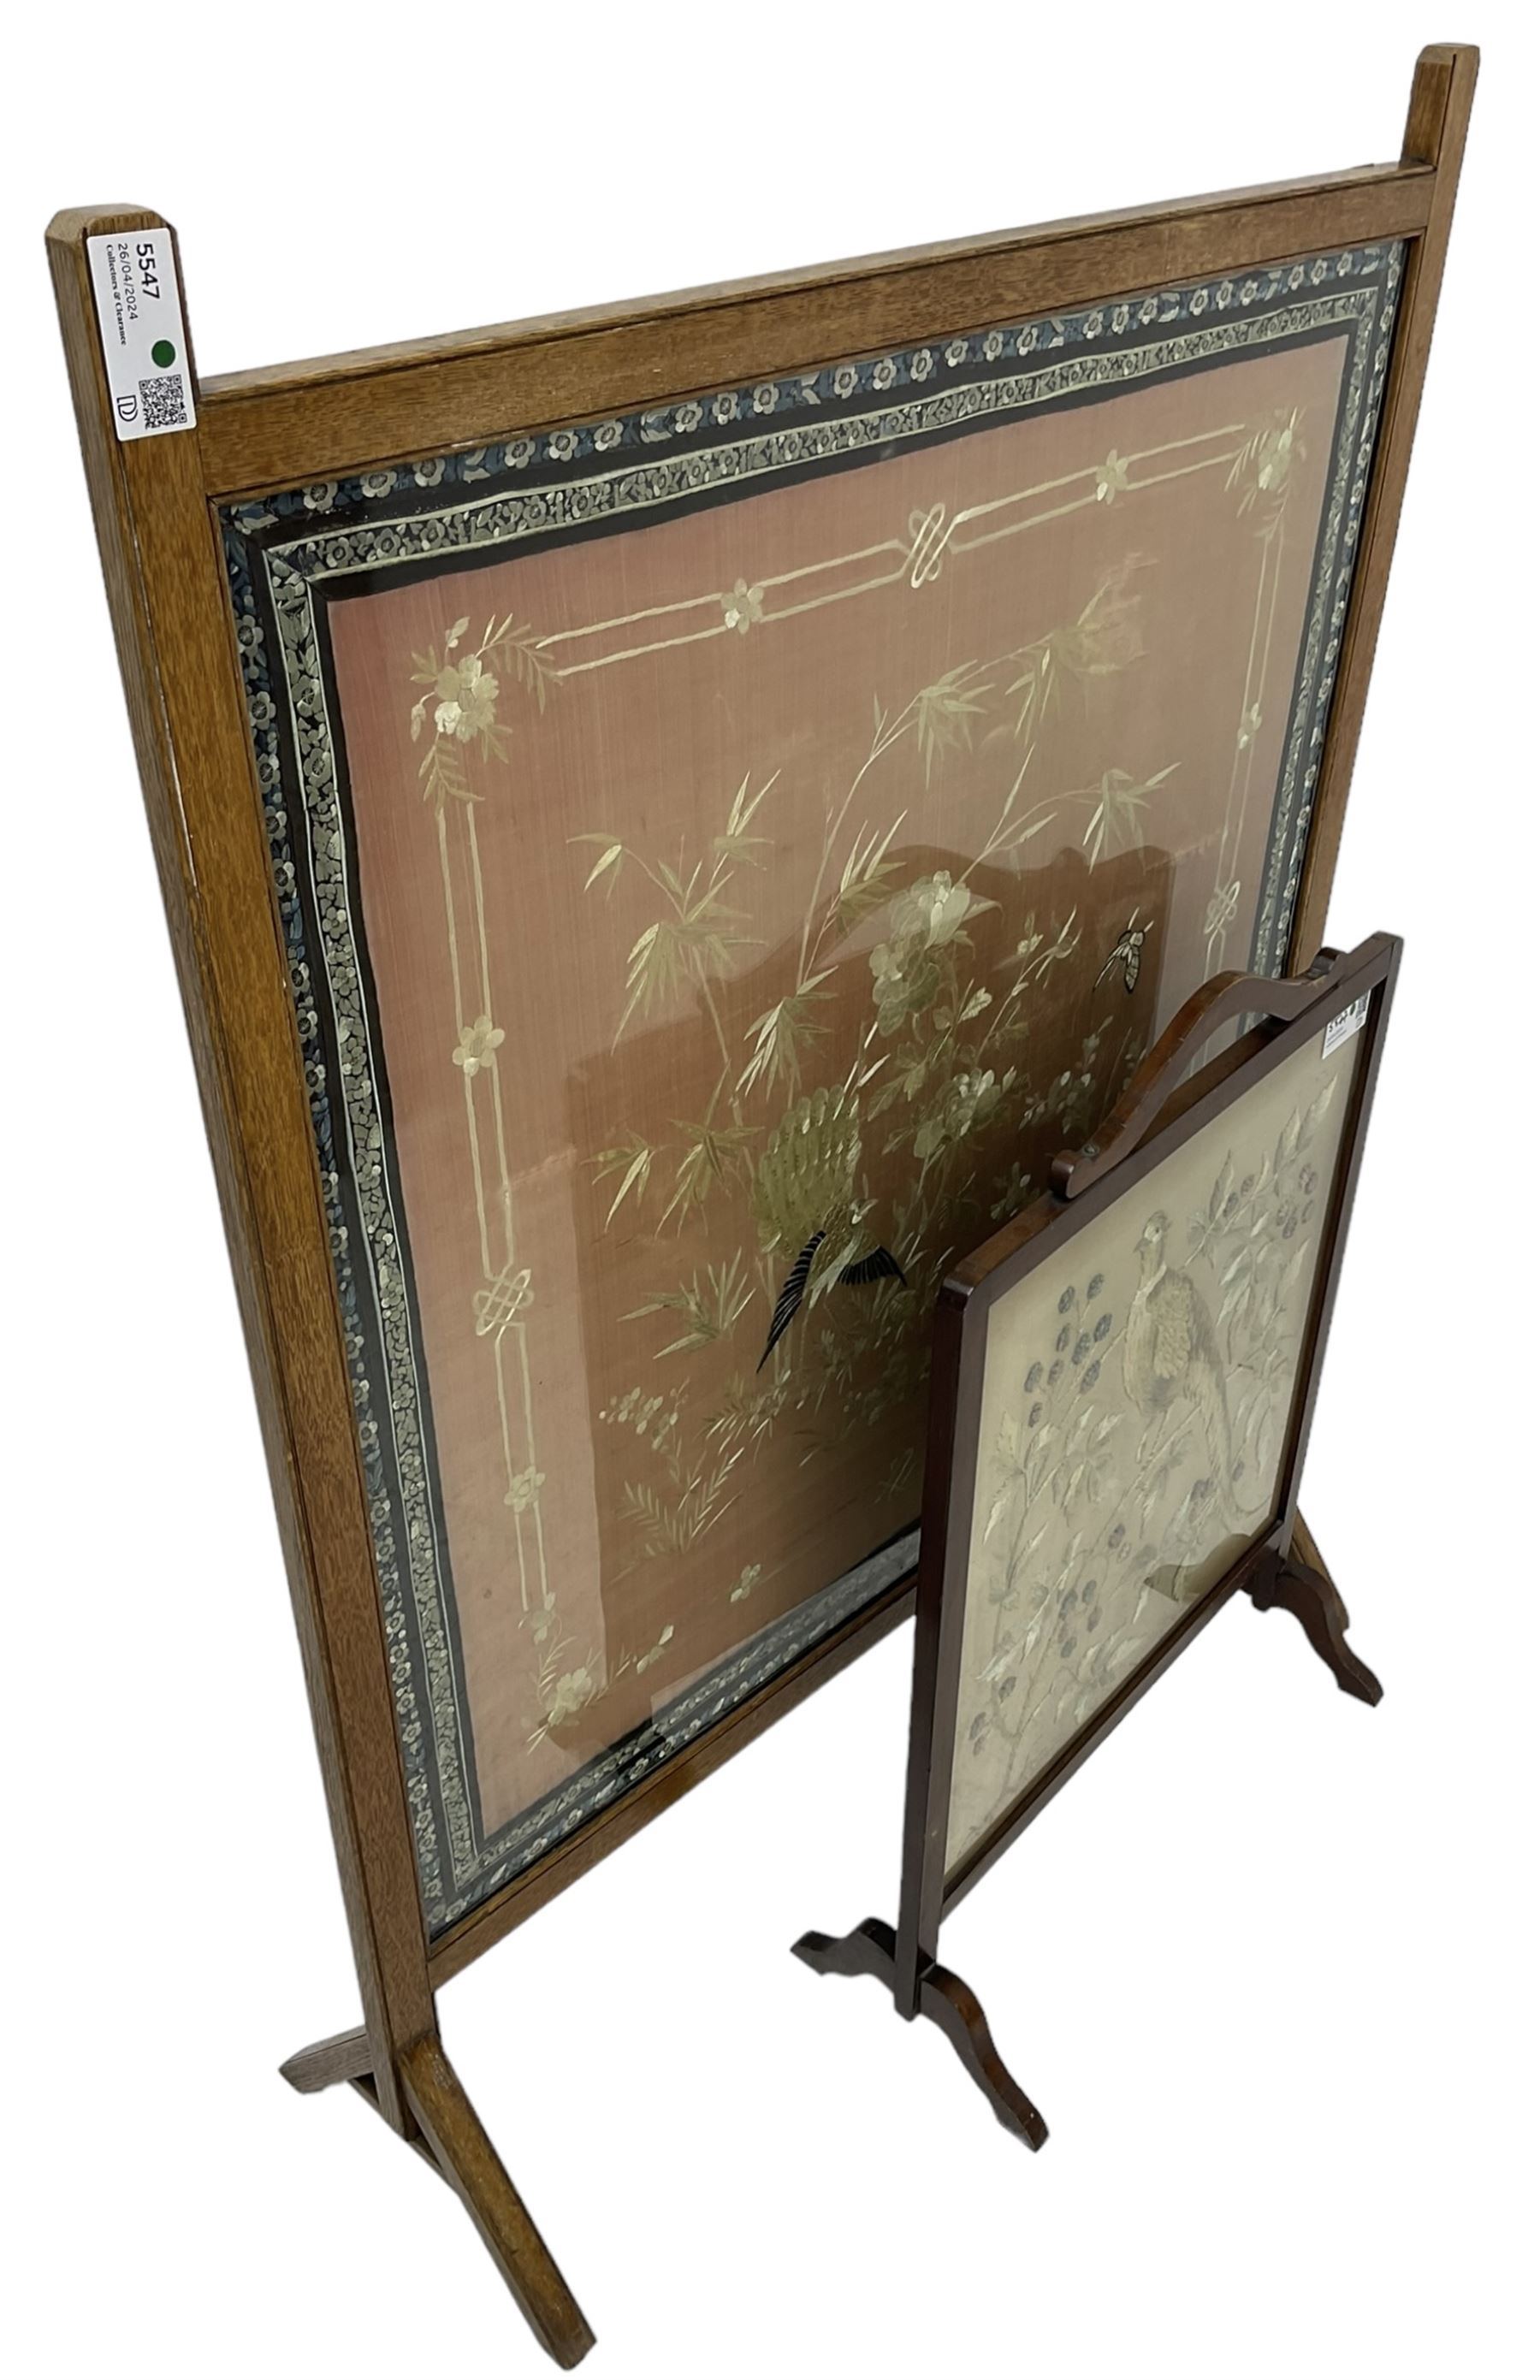 20th century oak framed fire screen - Image 2 of 2